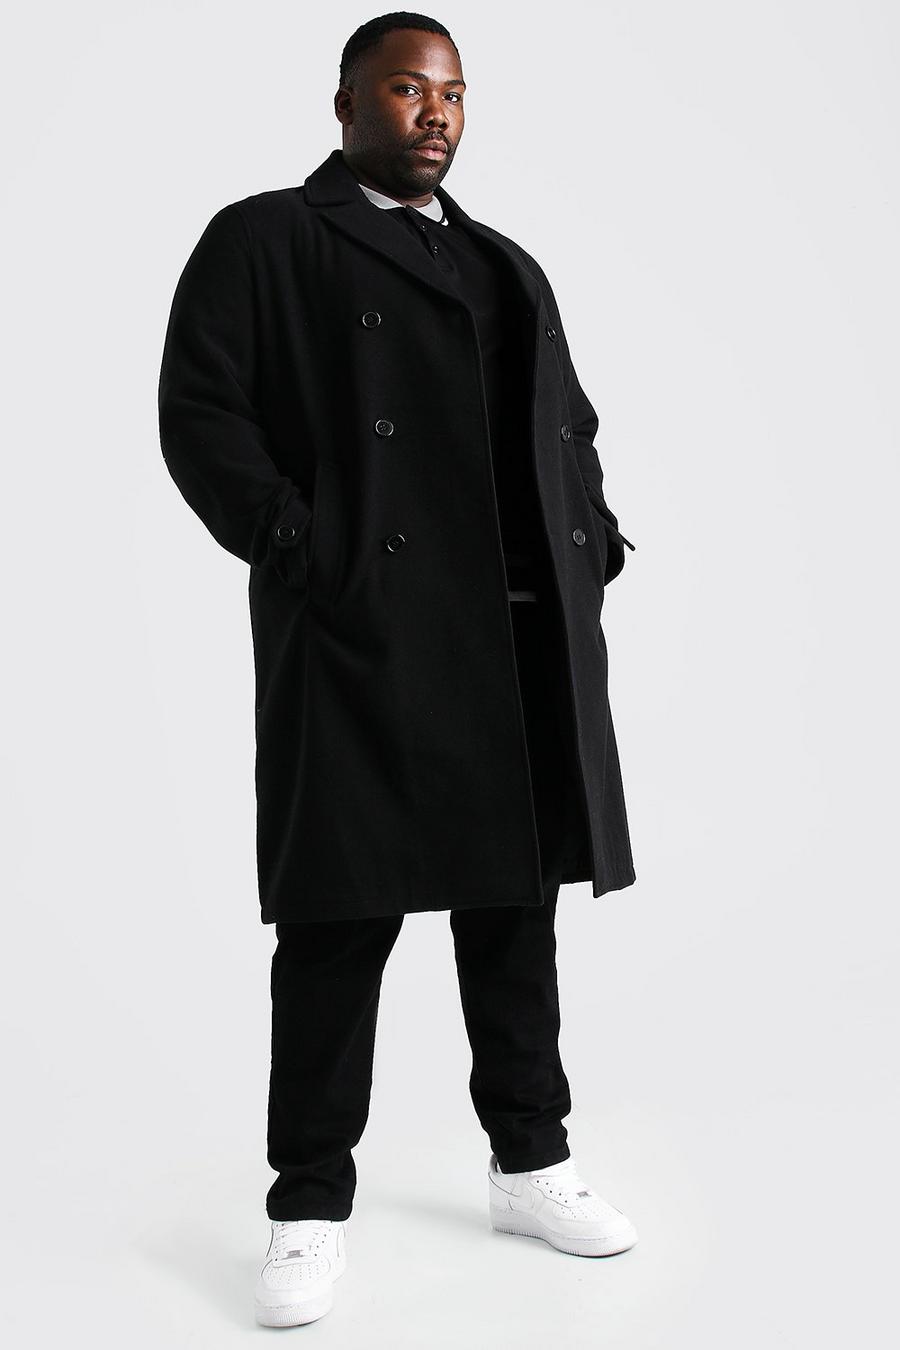 שחור מעיל עליון במראה צמר עם רכיסה כפולה לגברים גדולים וגבוהים image number 1